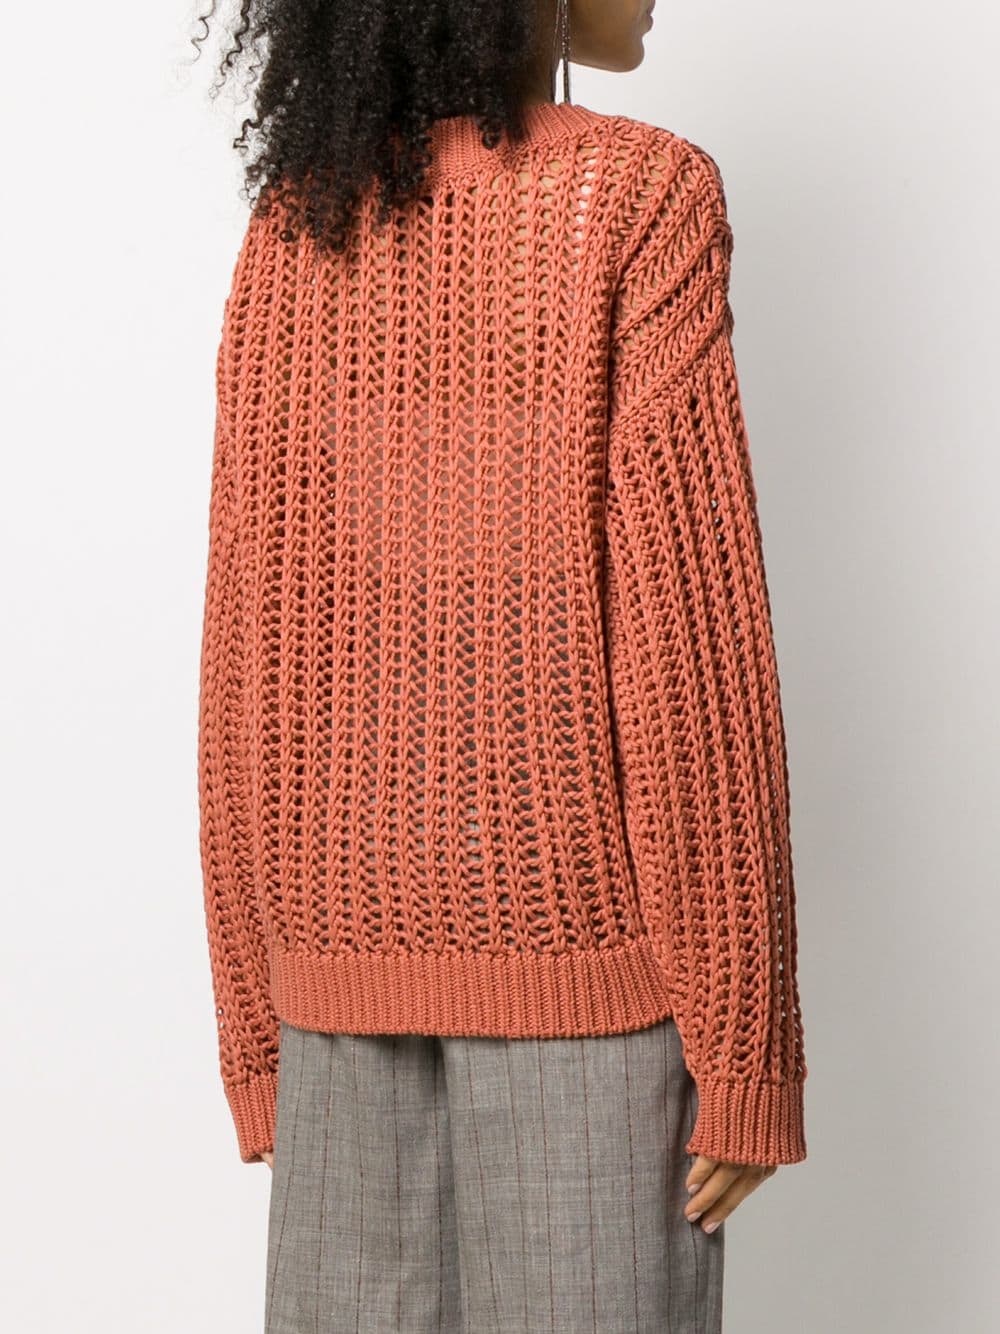 фото Brunello cucinelli трикотажный свитер с v-образным вырезом